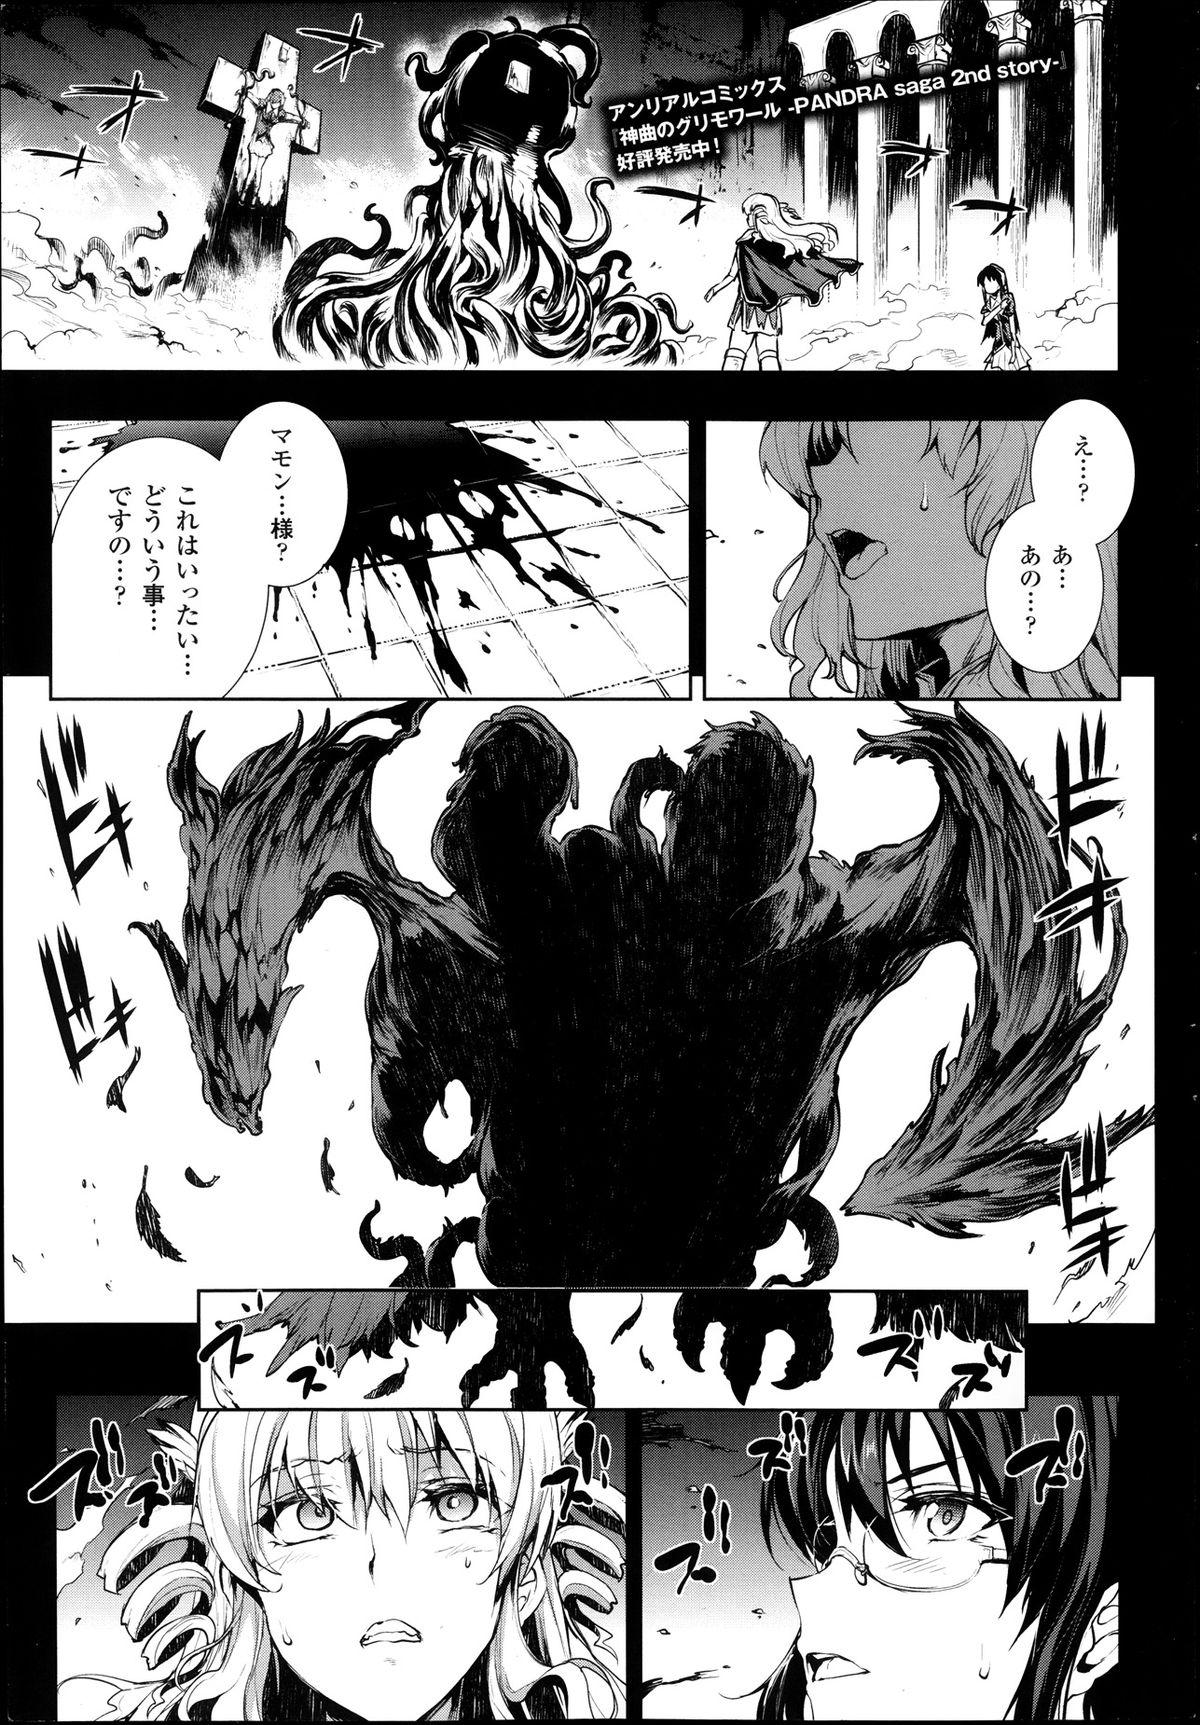 [Erect Sawaru] Shinkyoku no Grimoire -PANDRA saga 2nd story- Ch. 7-12 52